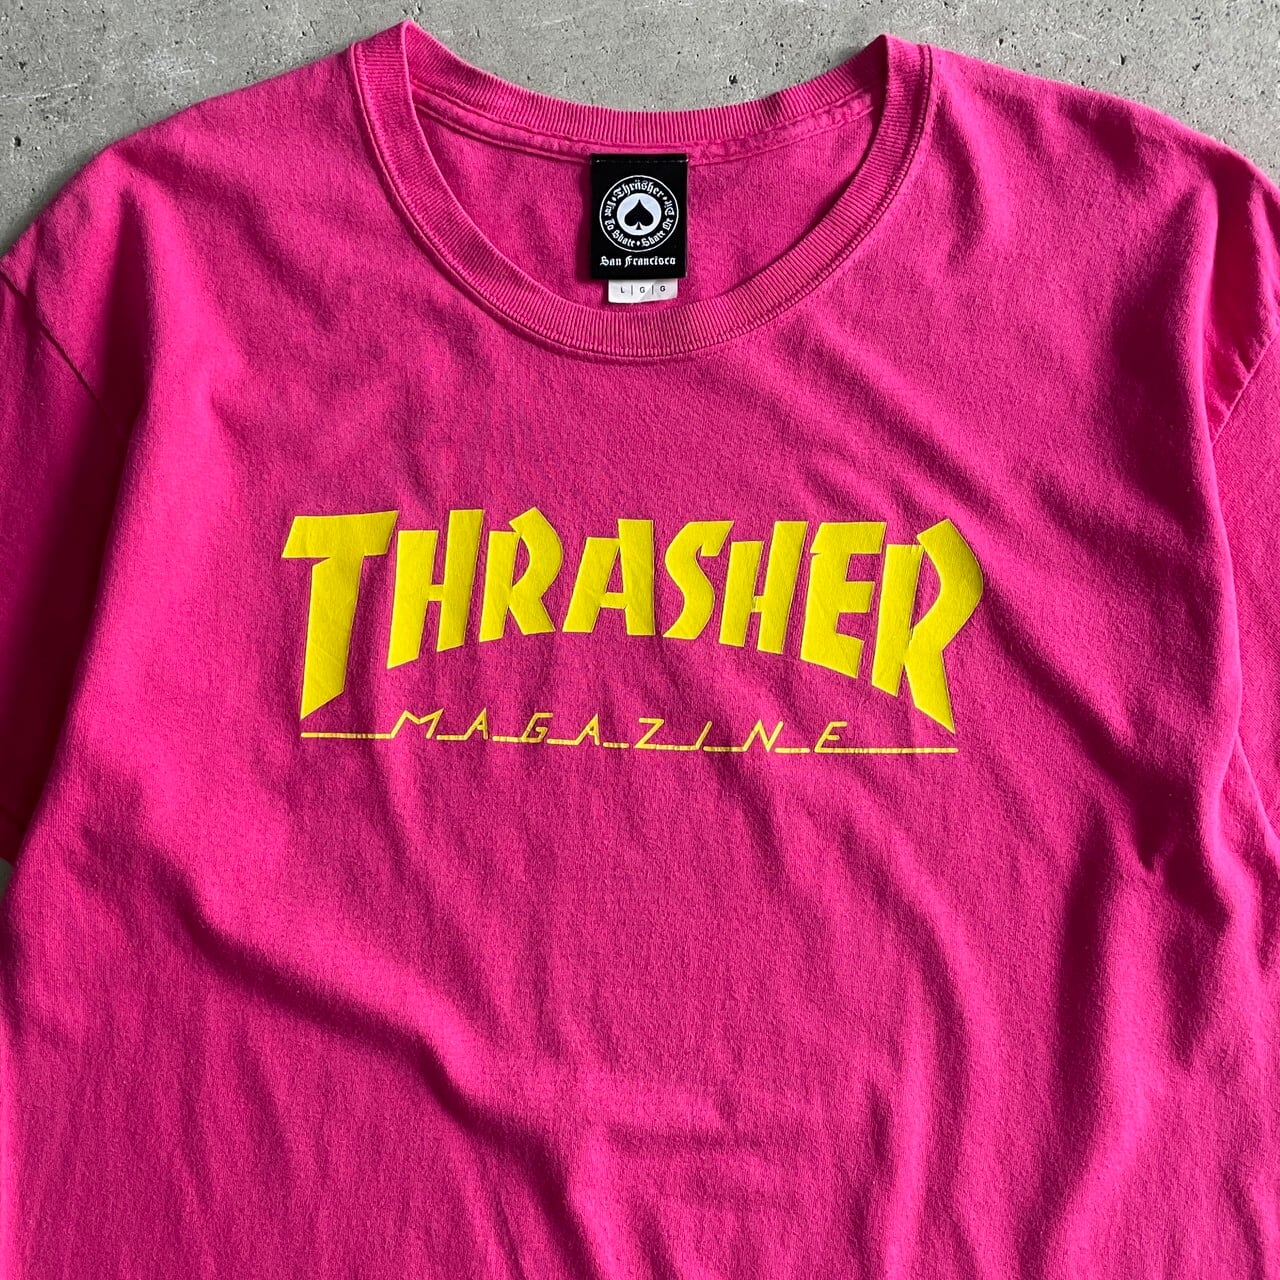 USA企画 Thrasher スラッシャー ロゴ Tシャツ プリント